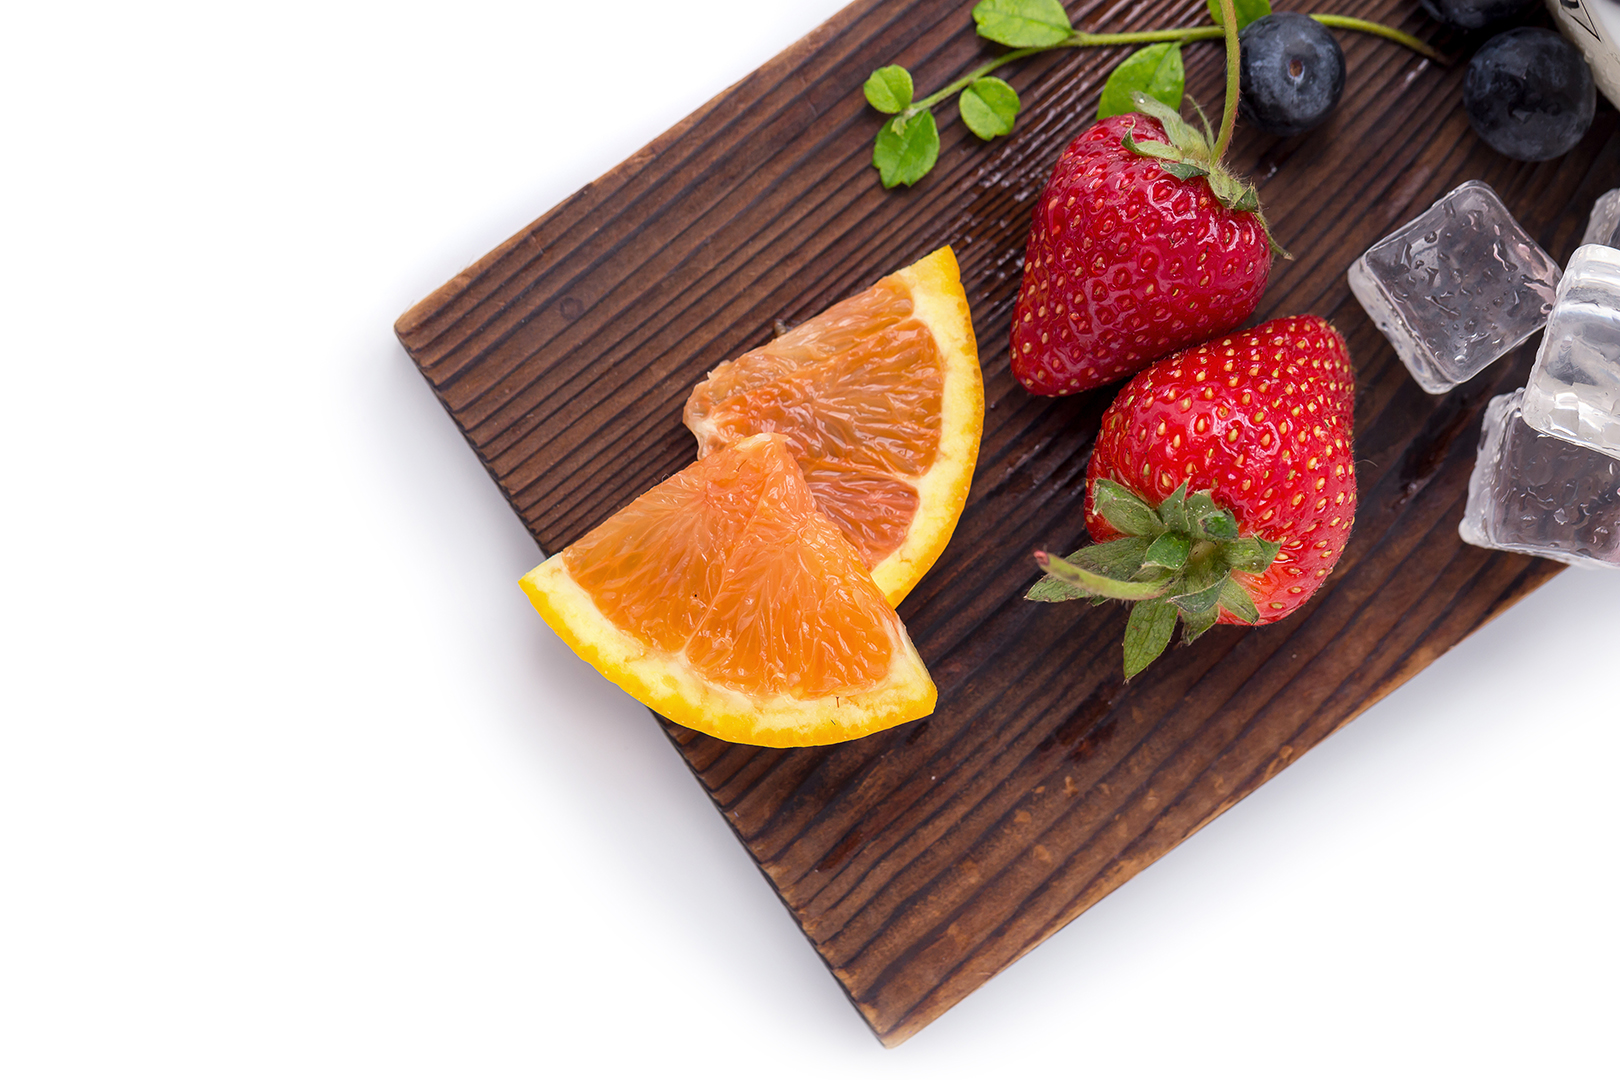 Comer alimentos con alto contenido de flavonoides podría hacer más lento el deterioro cognitivo, según un estudio